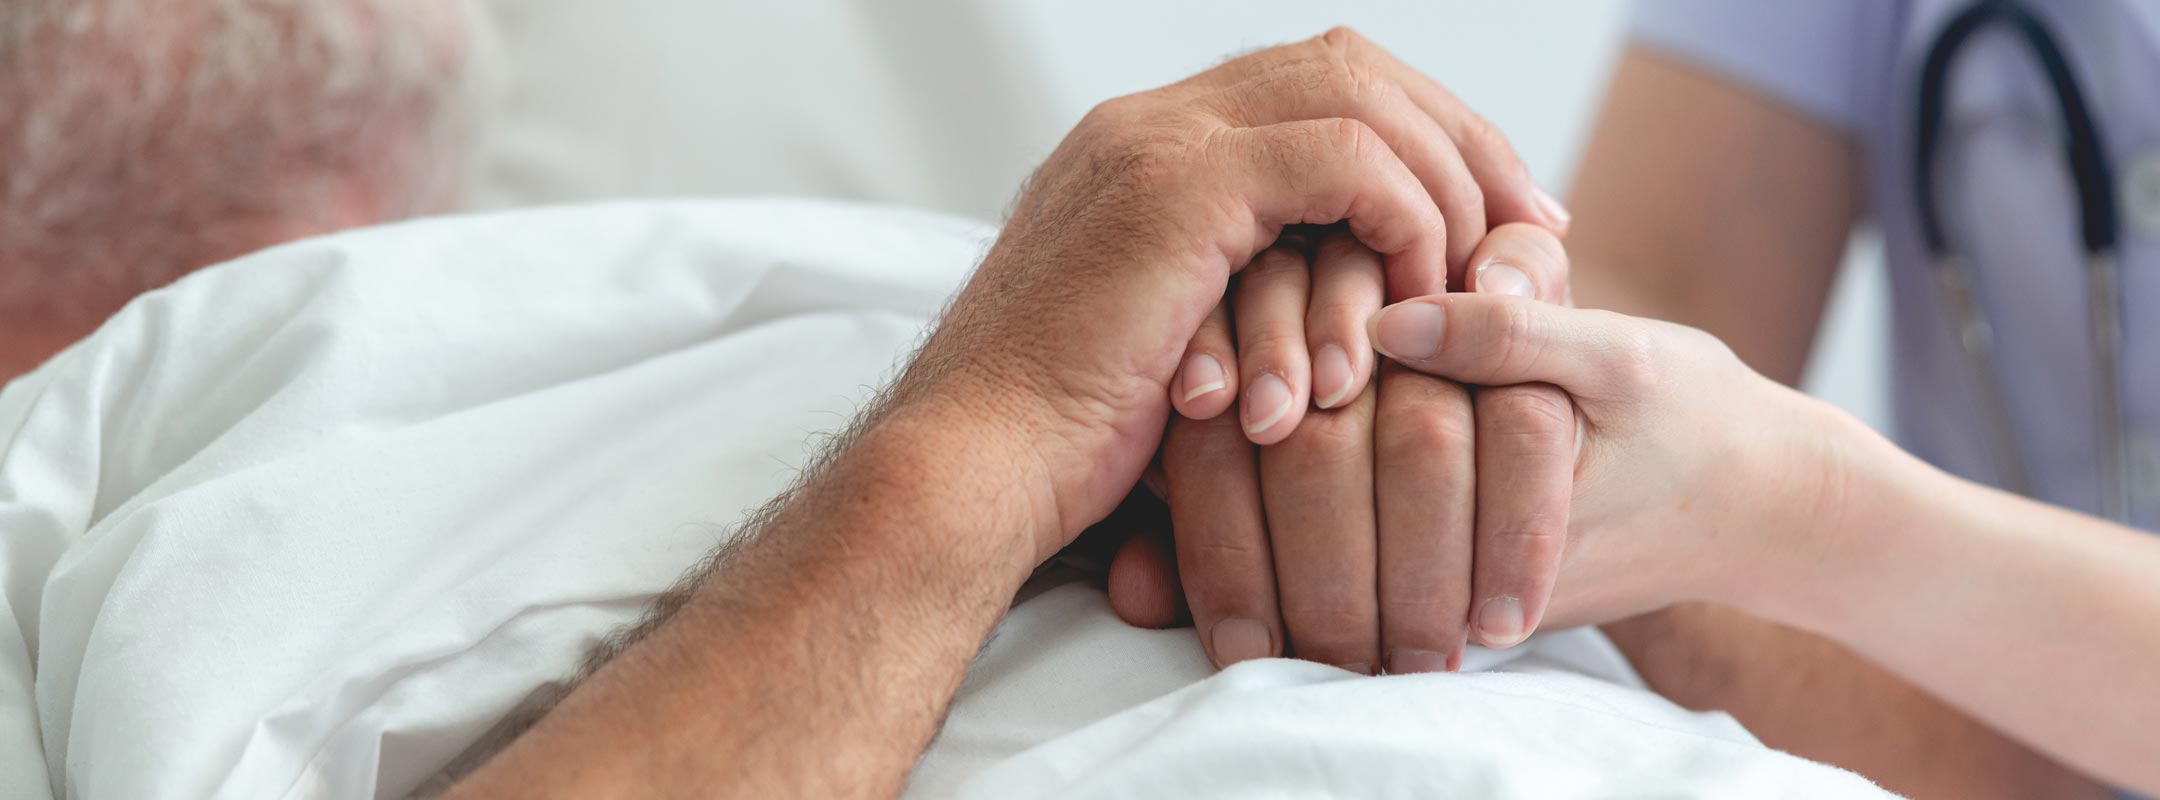 Eine Pflegerin hält die Hände eines alten Manns, der im Bett liegt